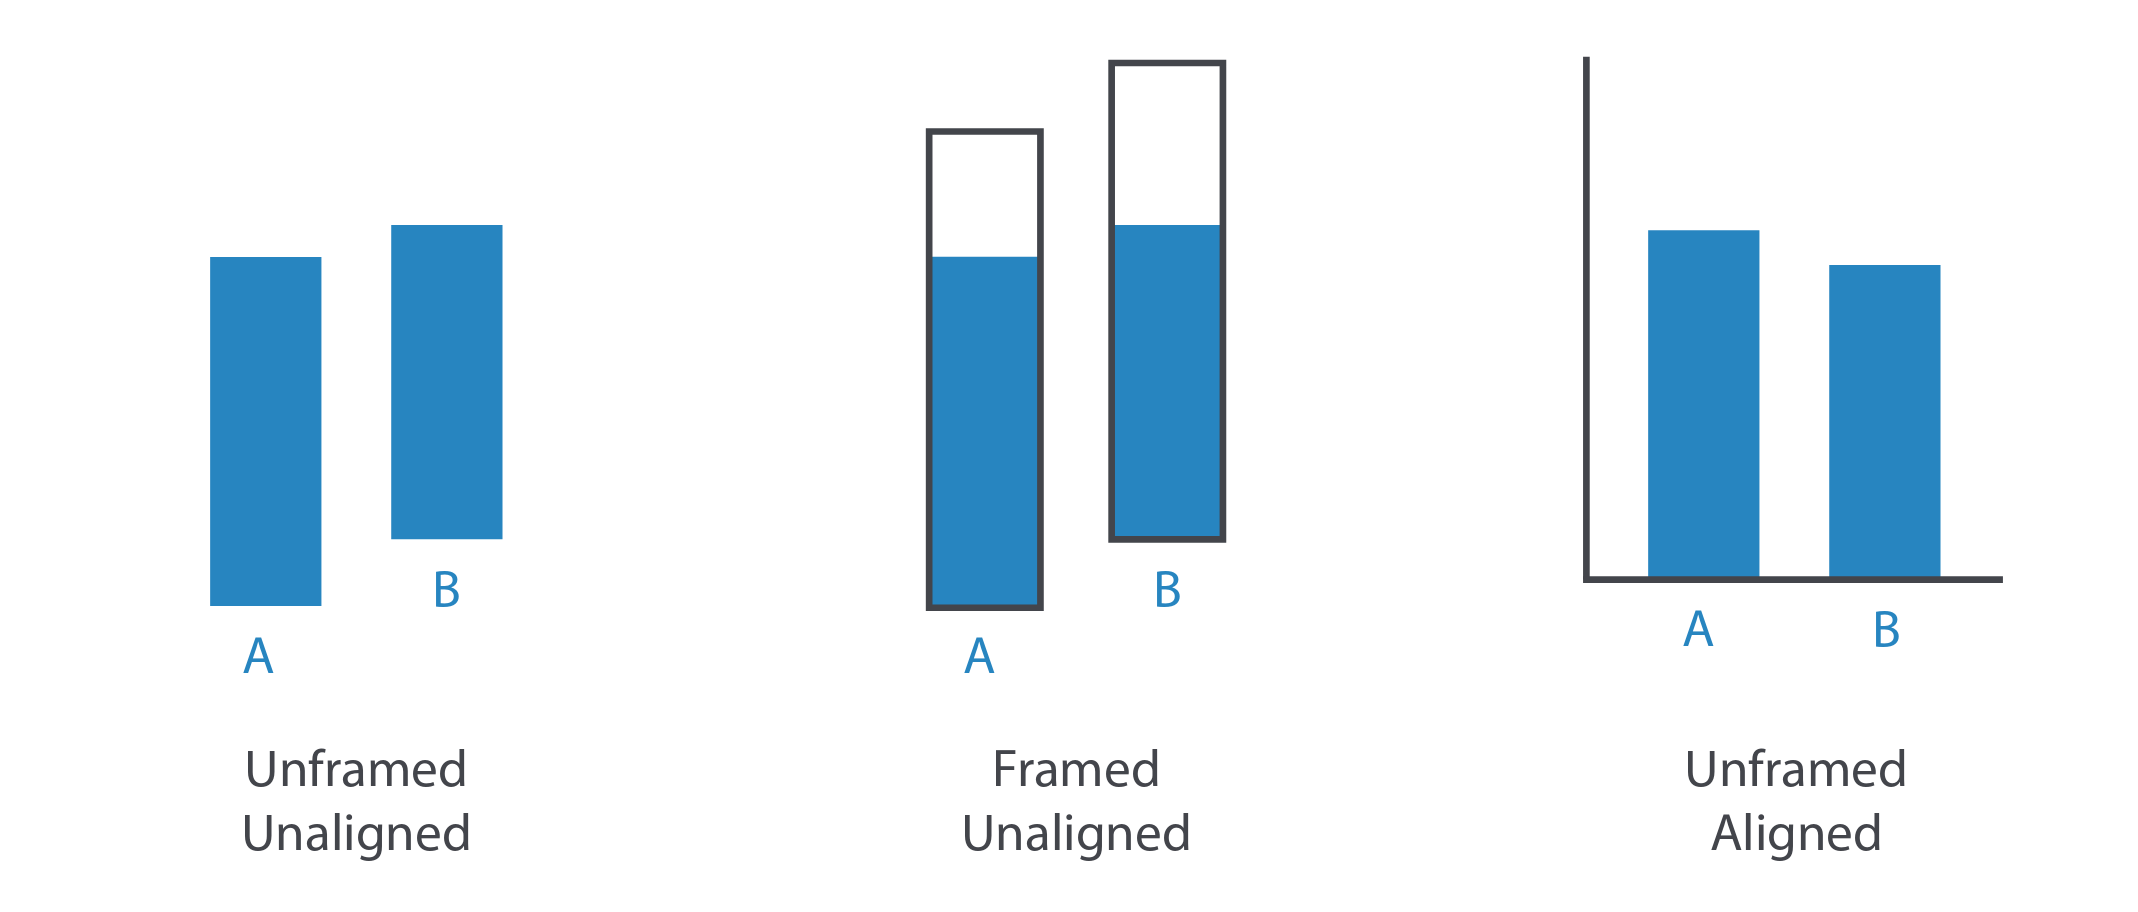 Relatividad al juzgar los tamaños de las barras. Fuente: Visualization Analysis & Design.